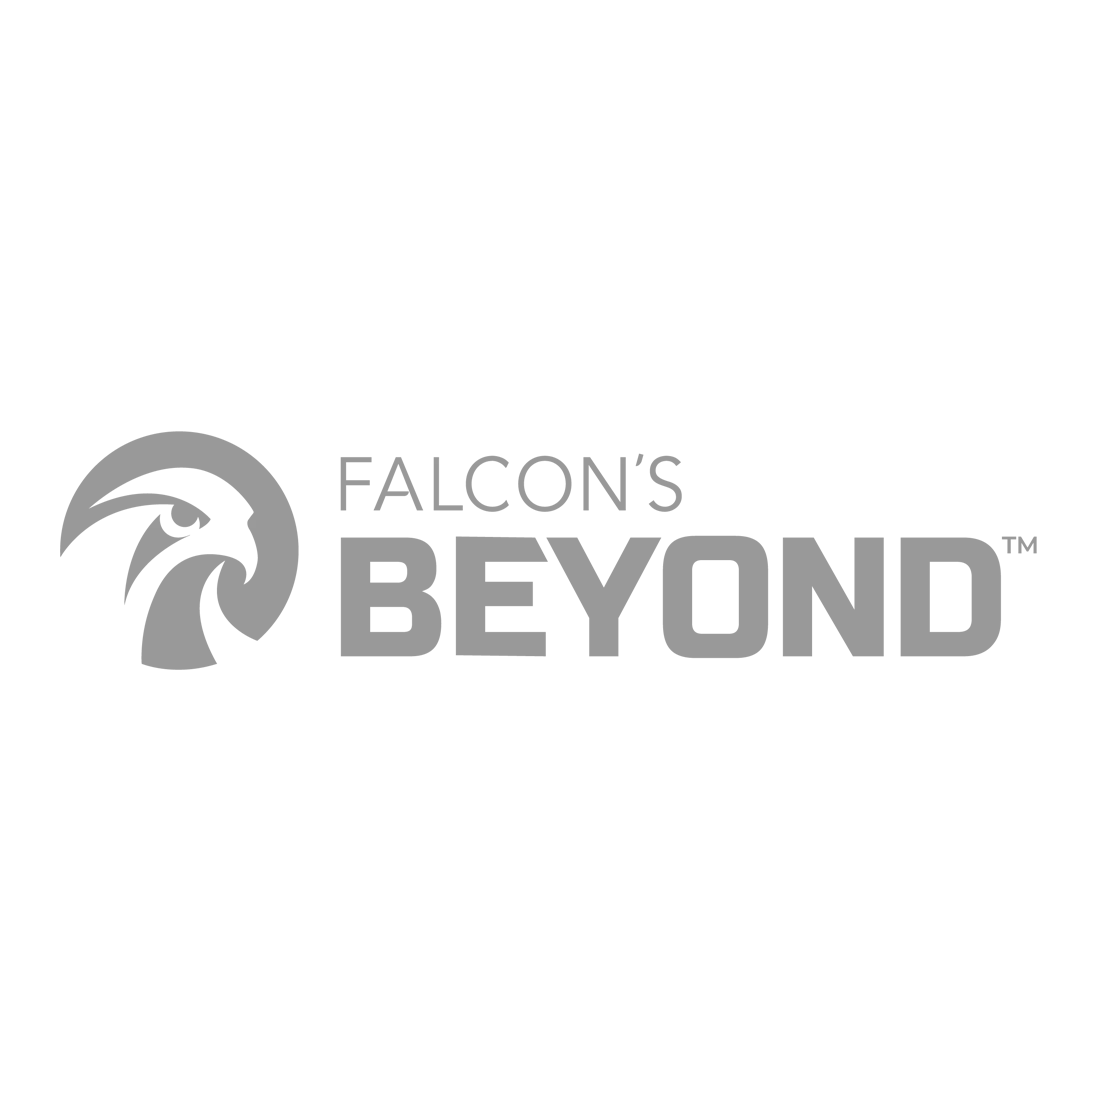 Falcon beyond